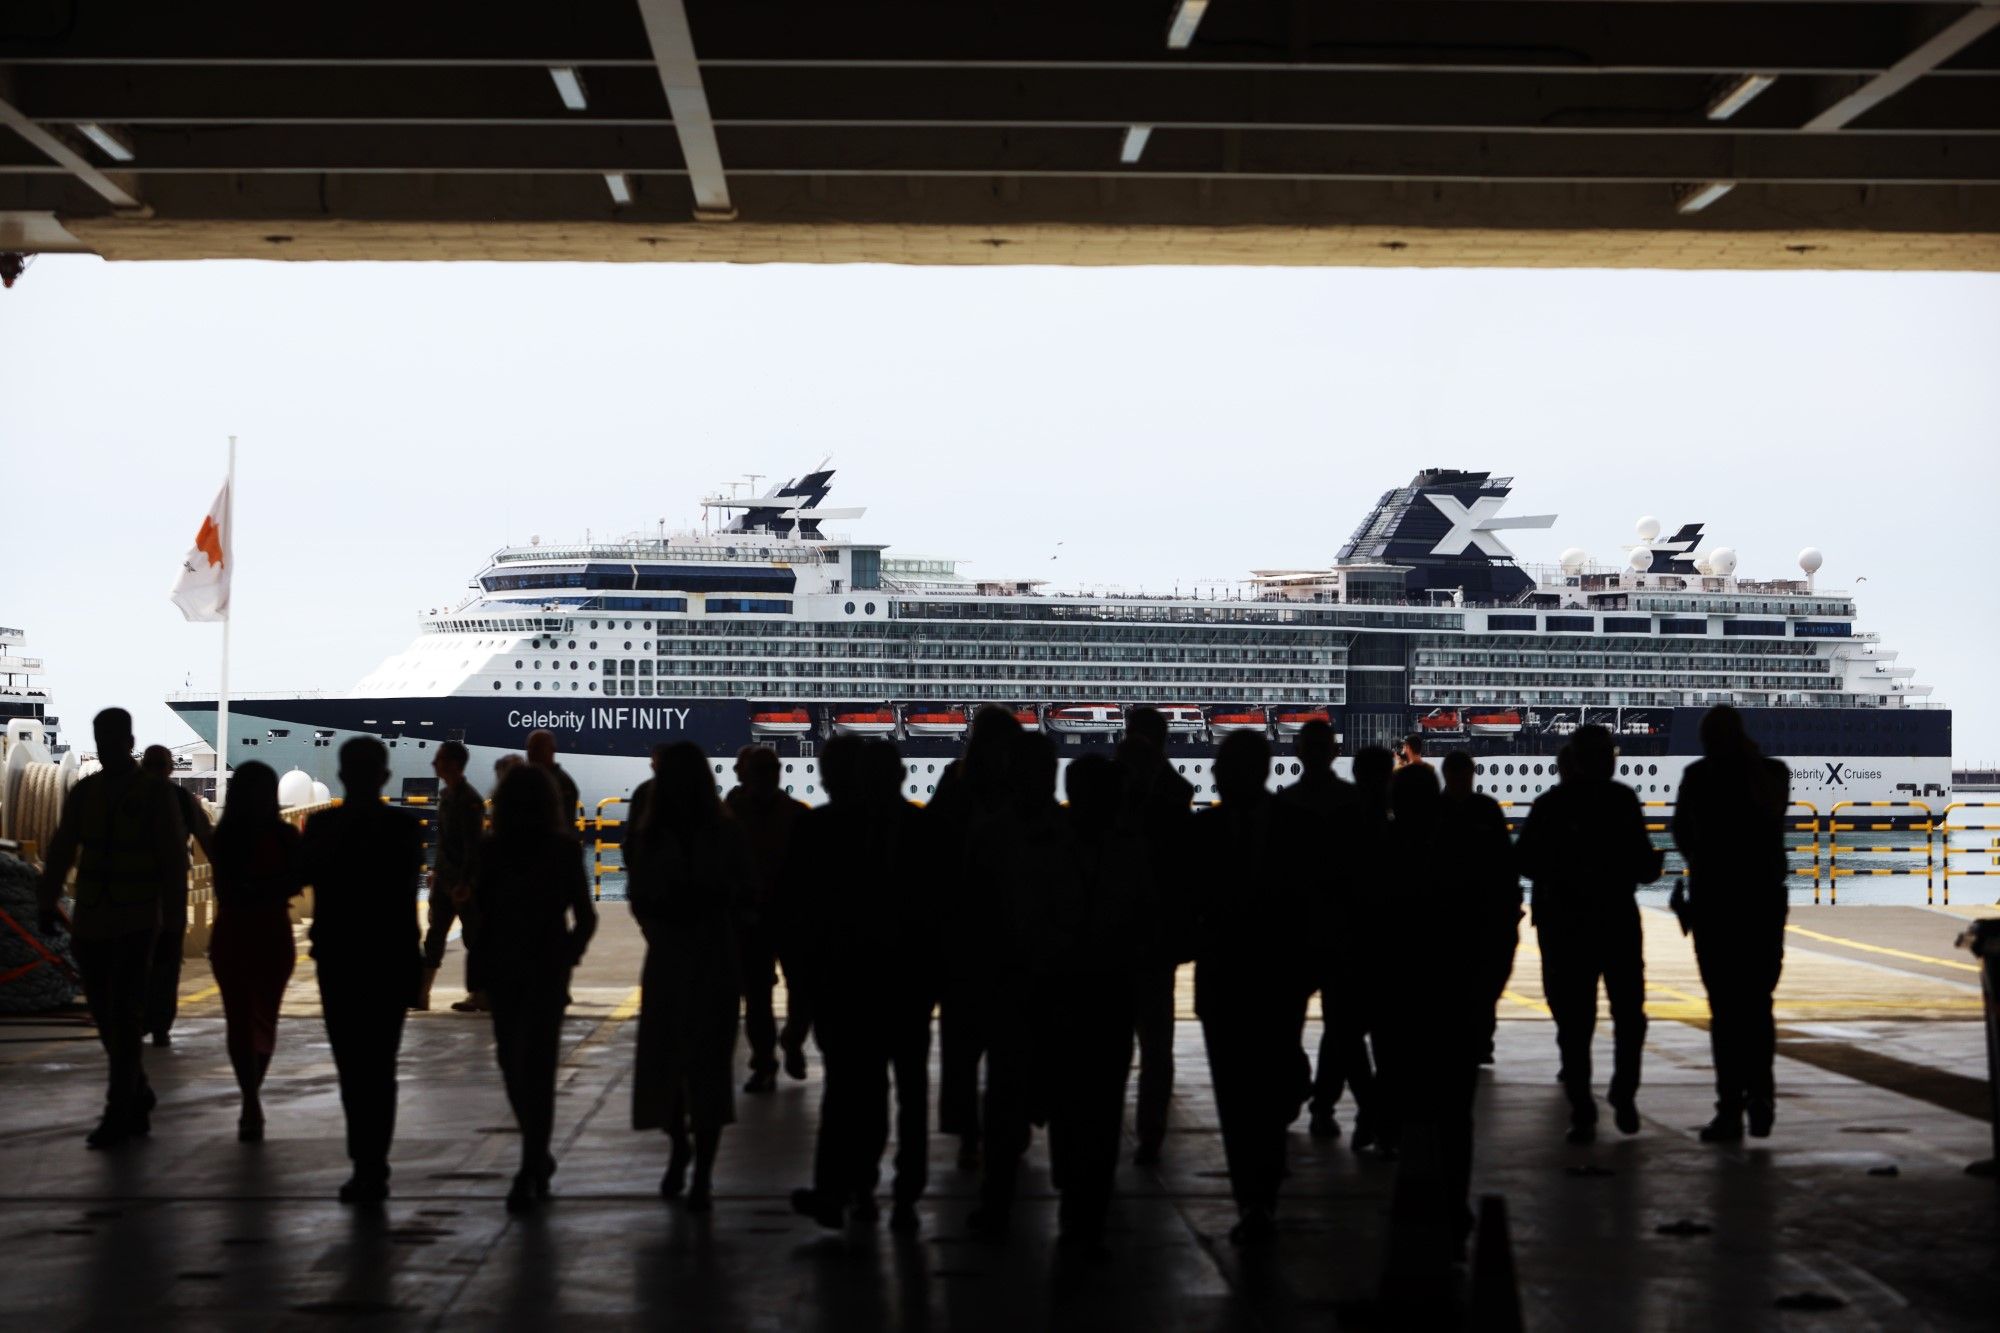 Así es el cruise ferry Rusadir, el barco ecológico que ya une Málaga y Melilla